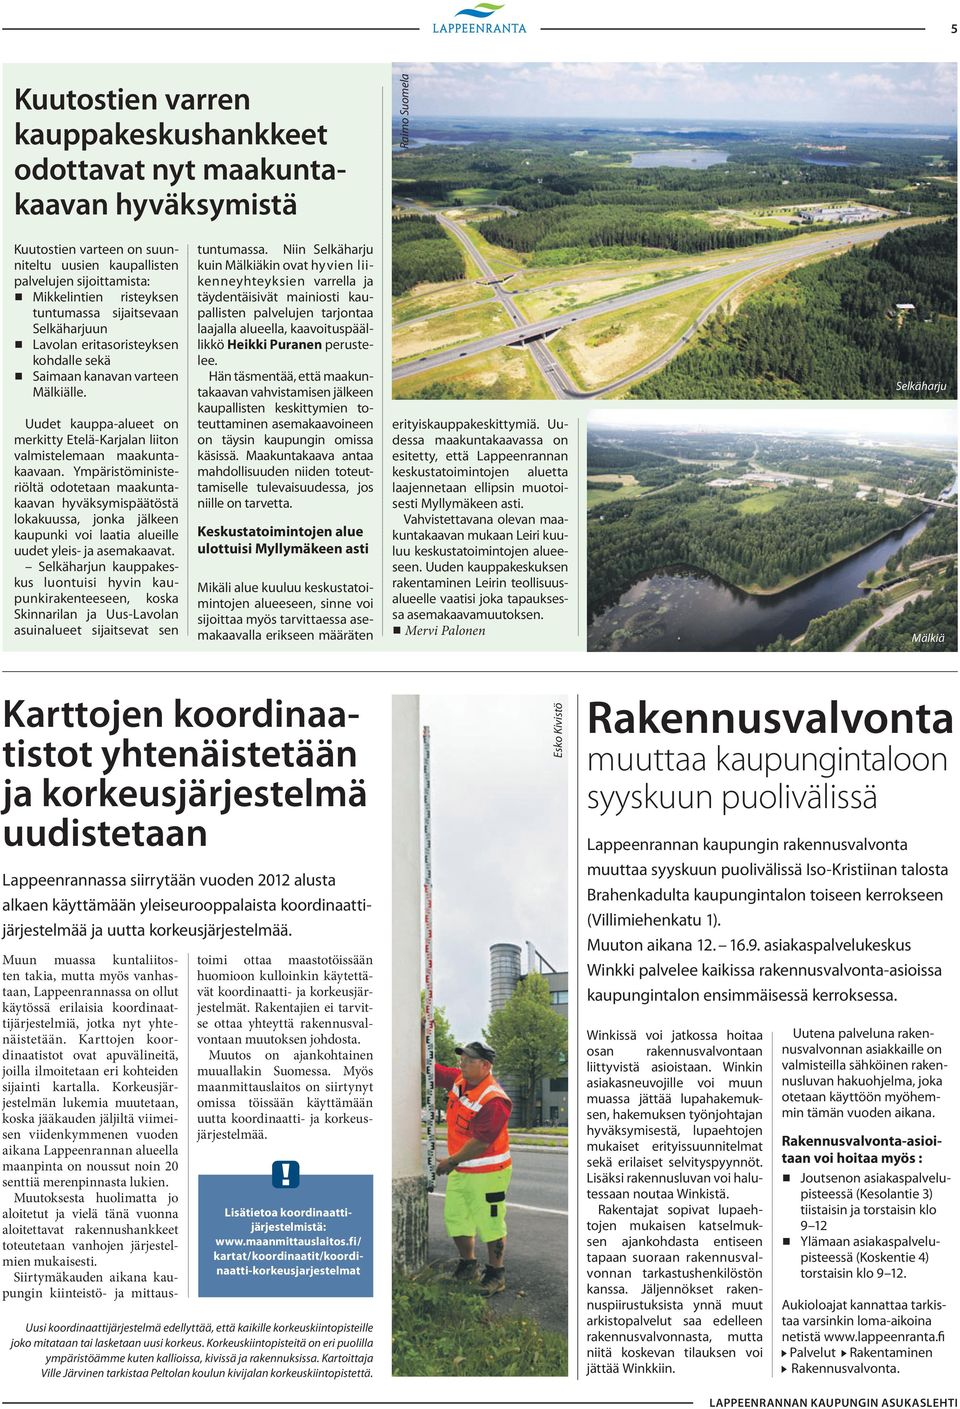 Uudet kauppa-alueet on merkitty Etelä-Karjalan liiton valmistelemaan maakuntakaavaan.